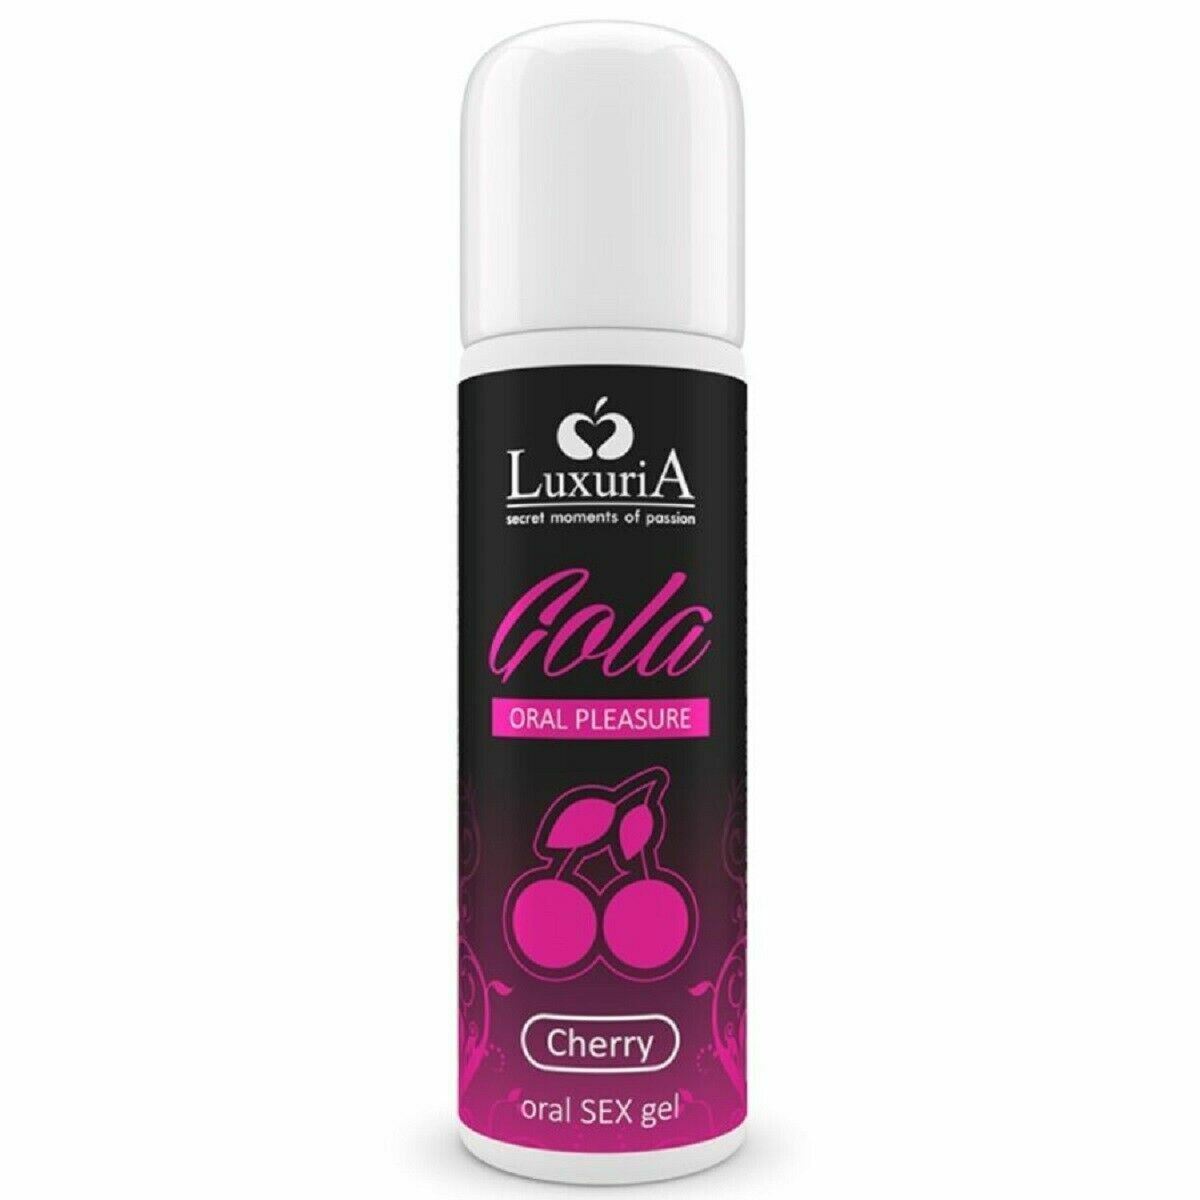 Luxuria Gola gel per sesso orale aromatizzato preservativo sicuro 30 ml 